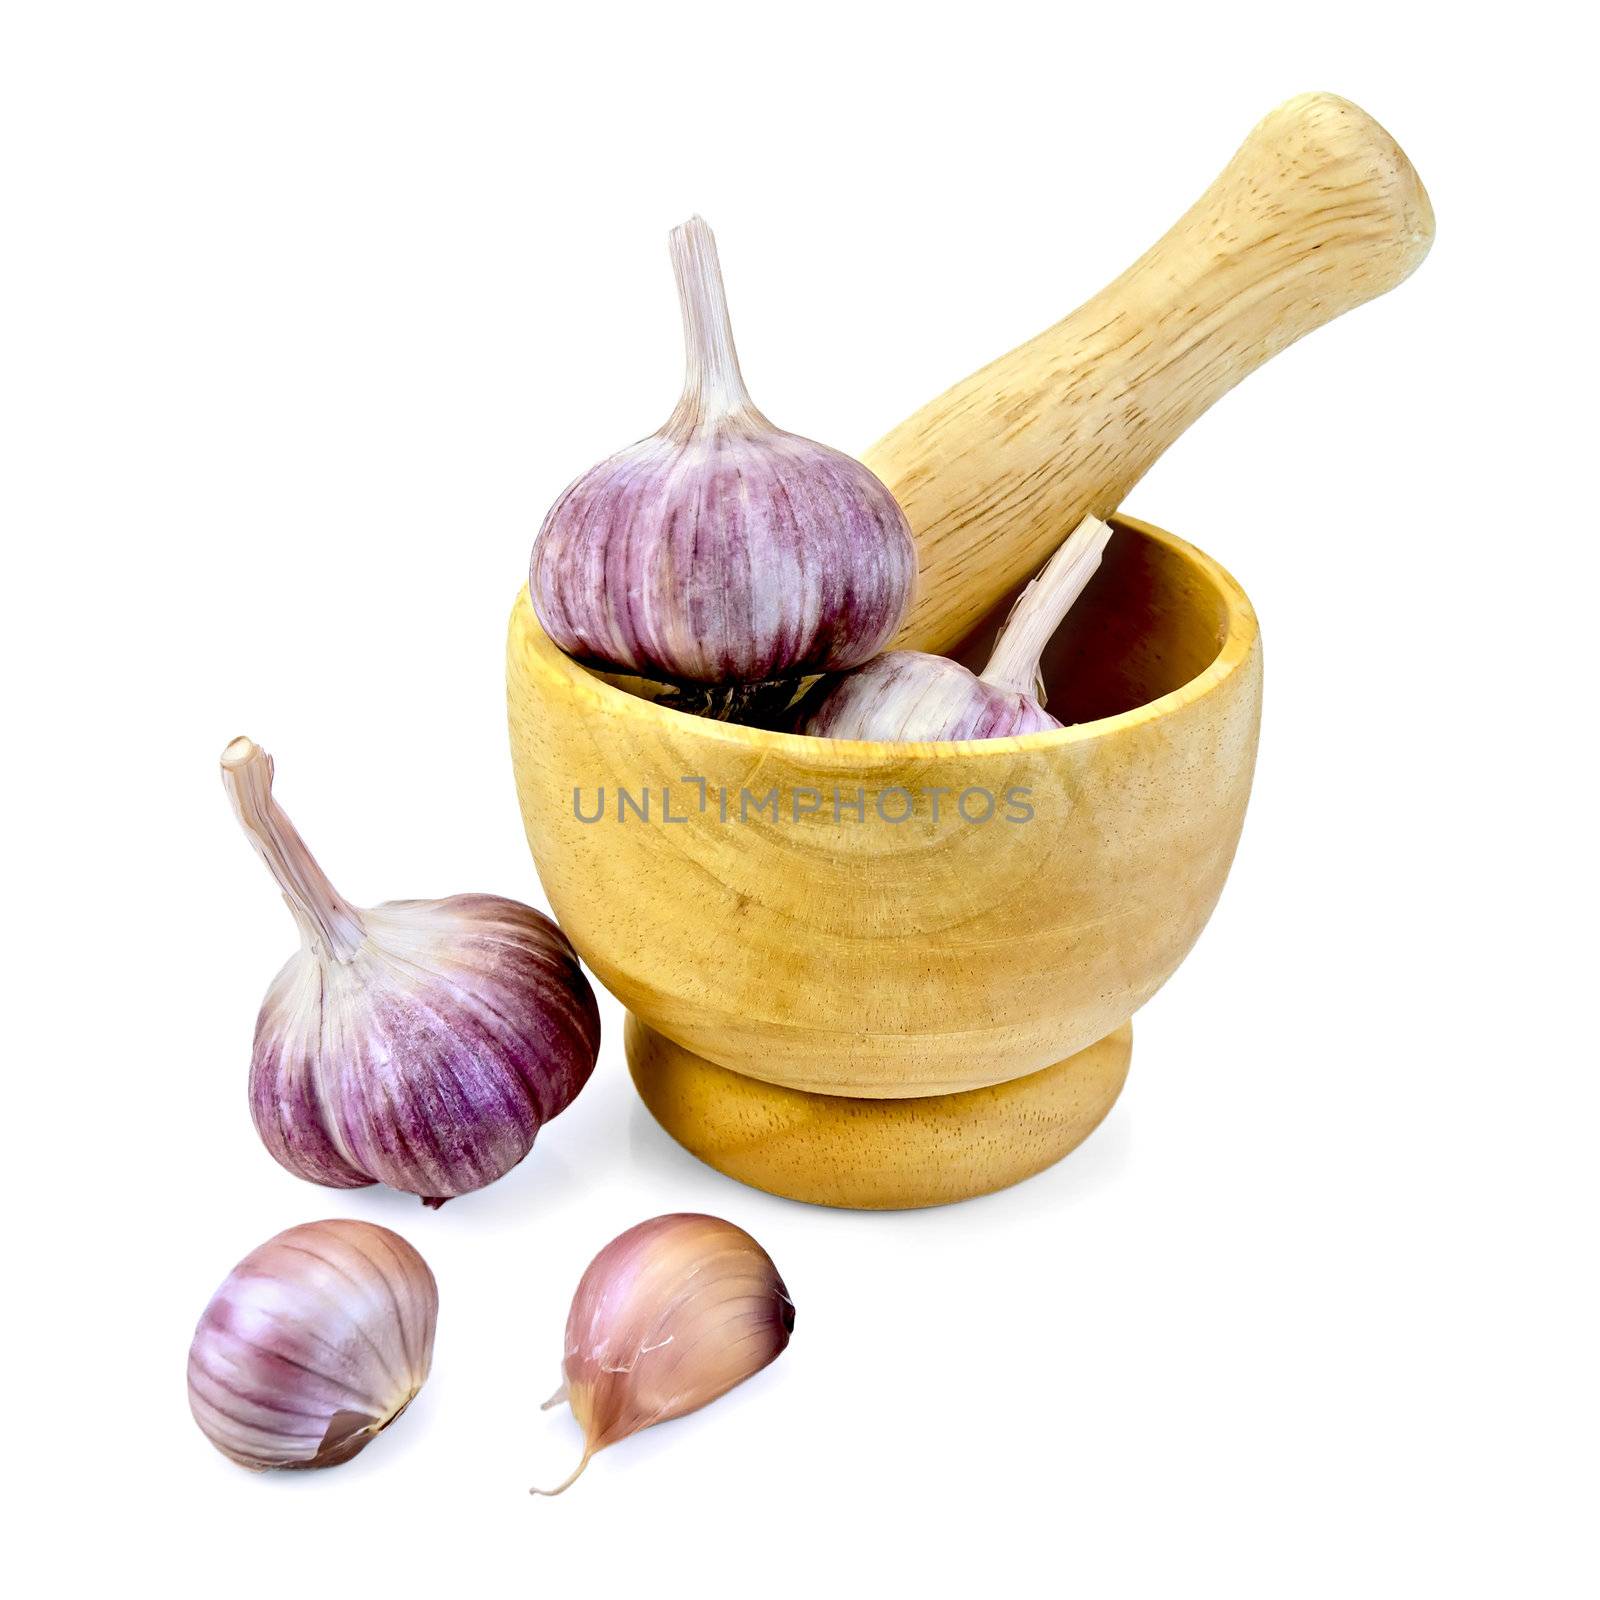 Garlic in a wooden mortar by rezkrr